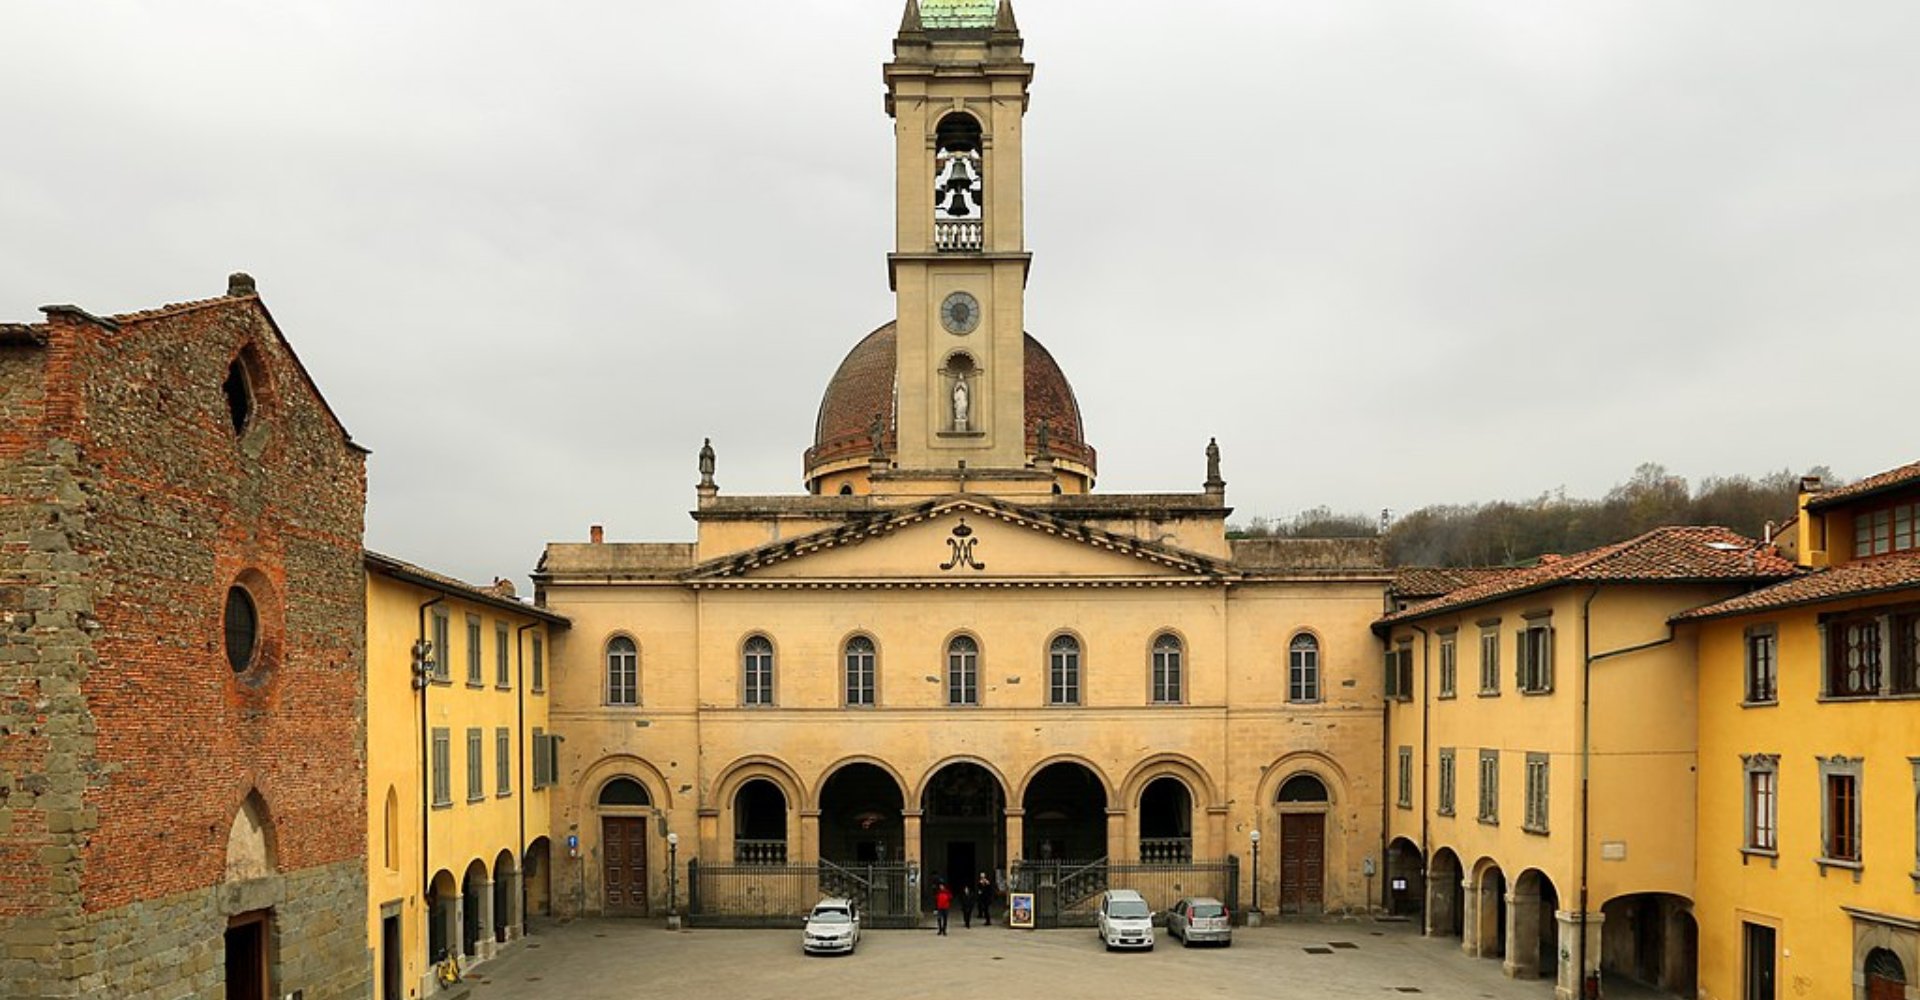 San Giovanni Valdarno, Palazzo di Arnolfo, veduta sulla Madonna delle Grazie